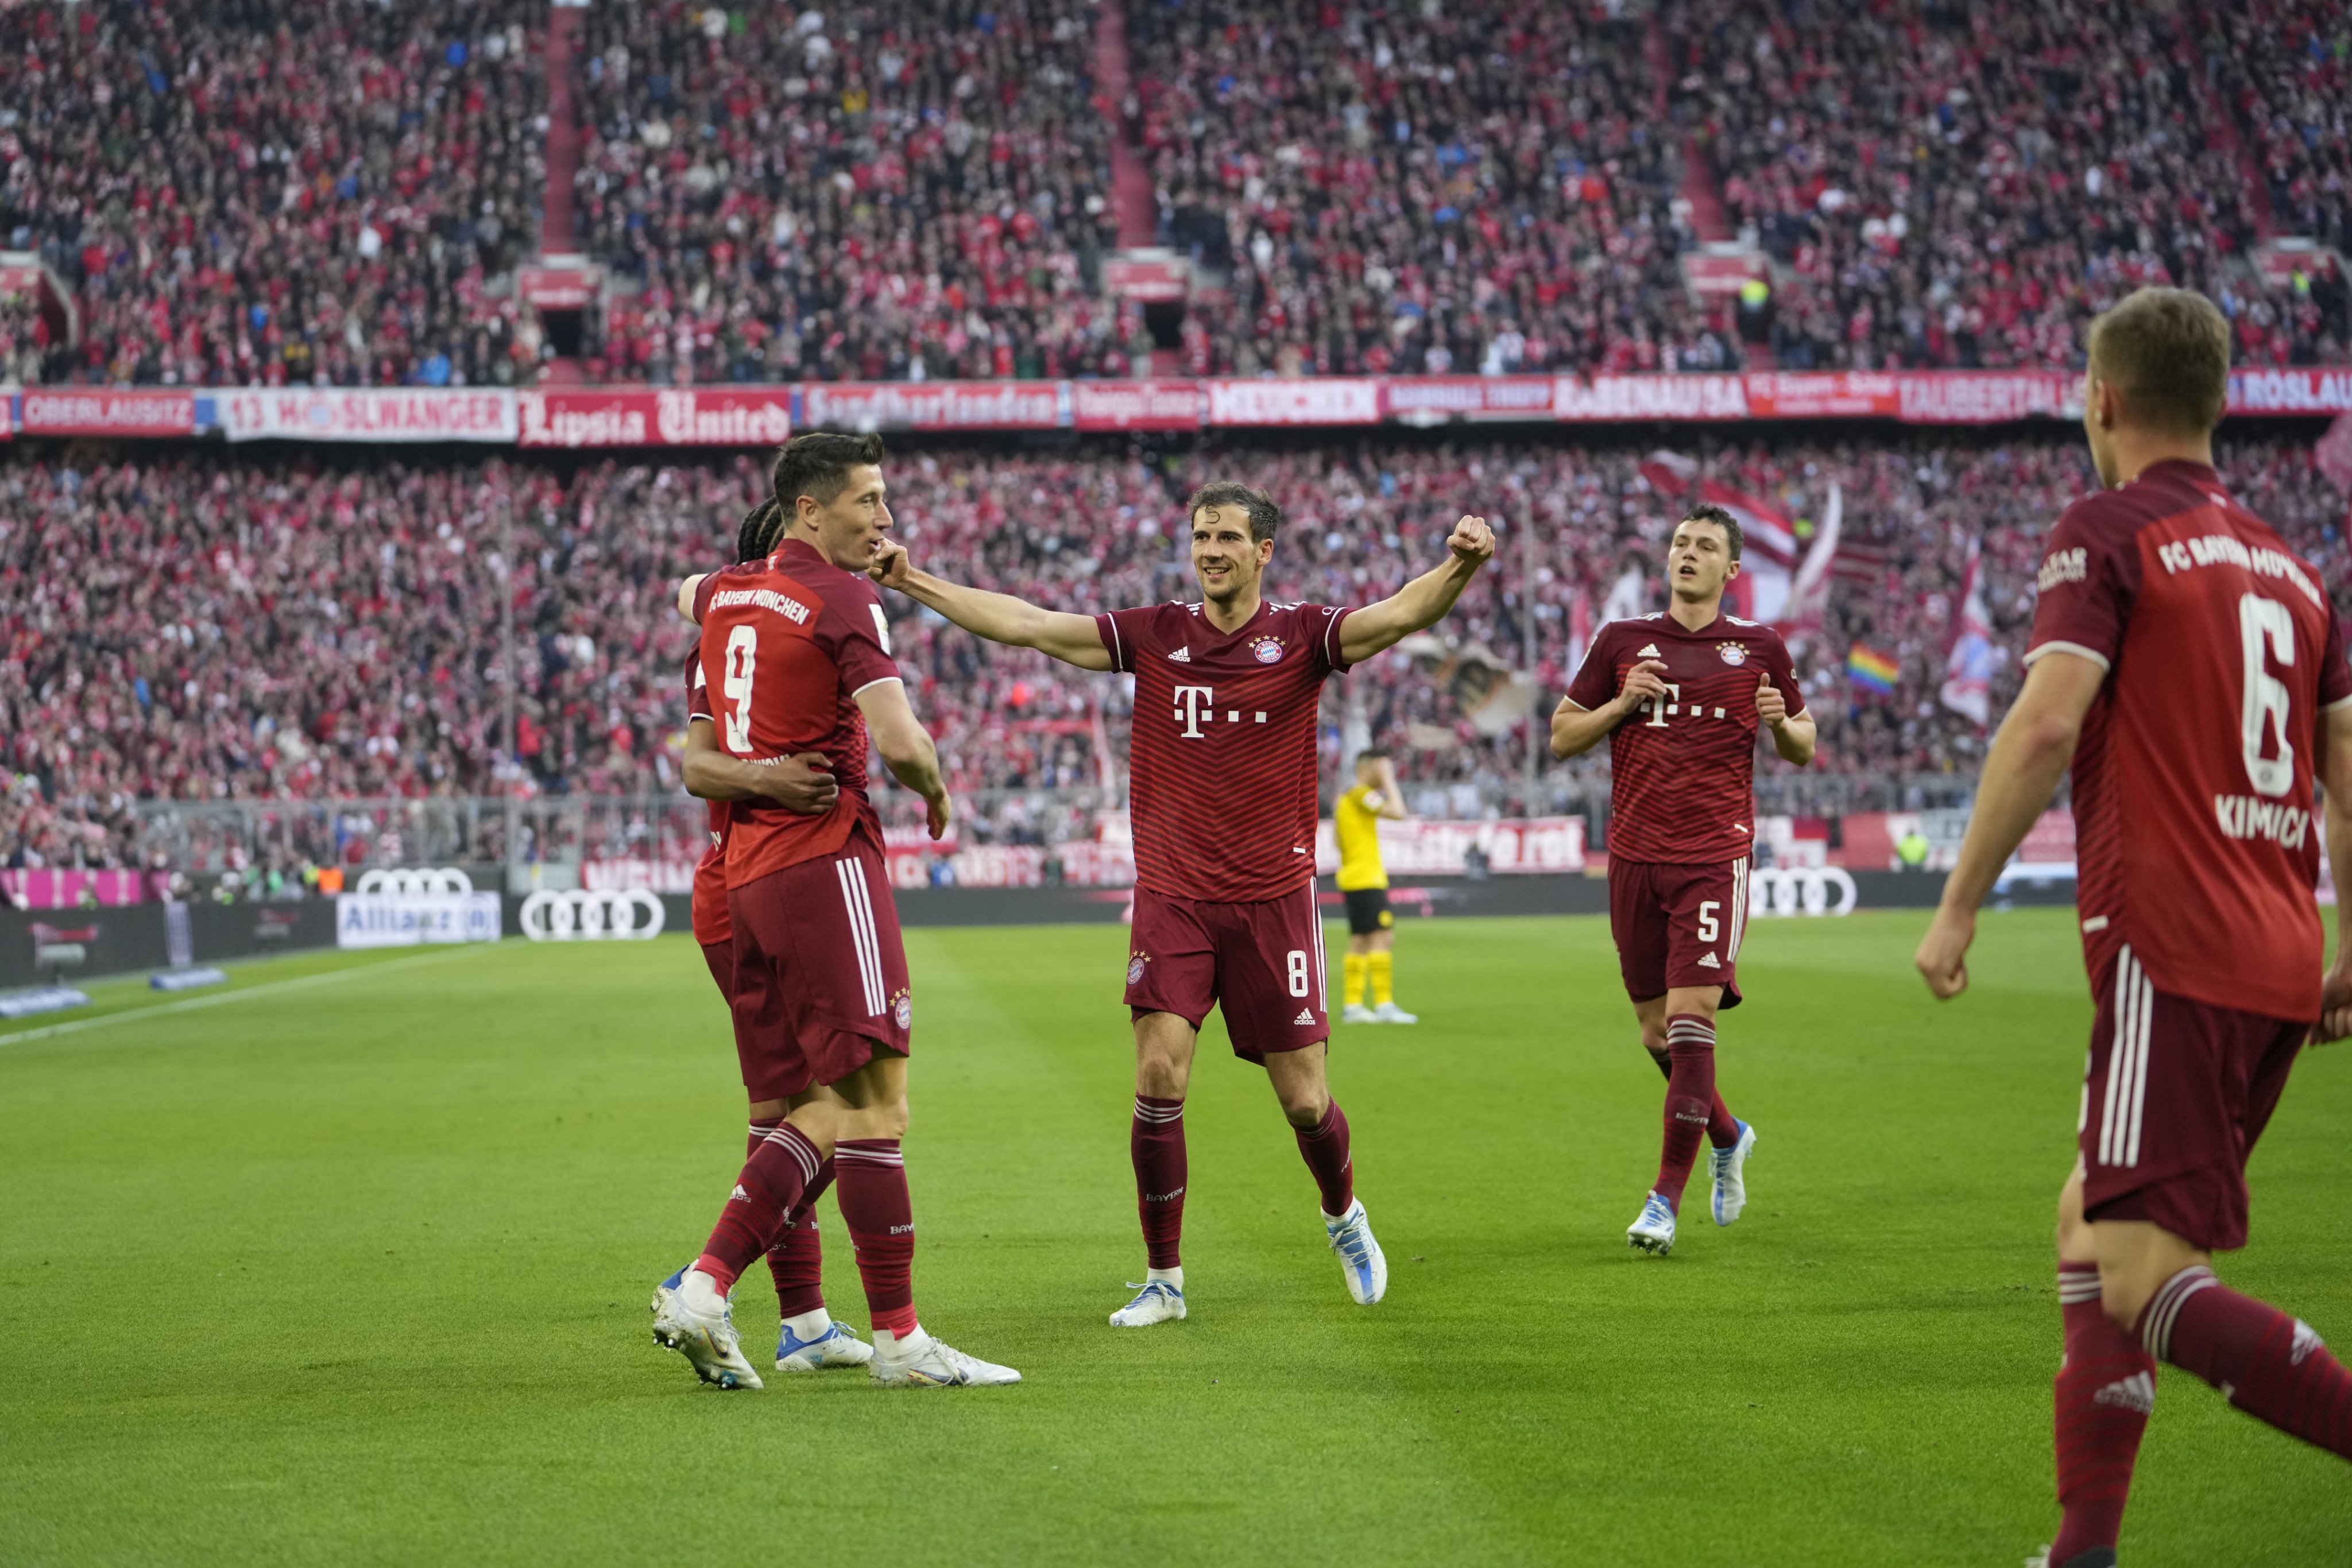 Bayern Munich seal 10th consecutive Bundesliga title after Der Klassiker win over Dortmund